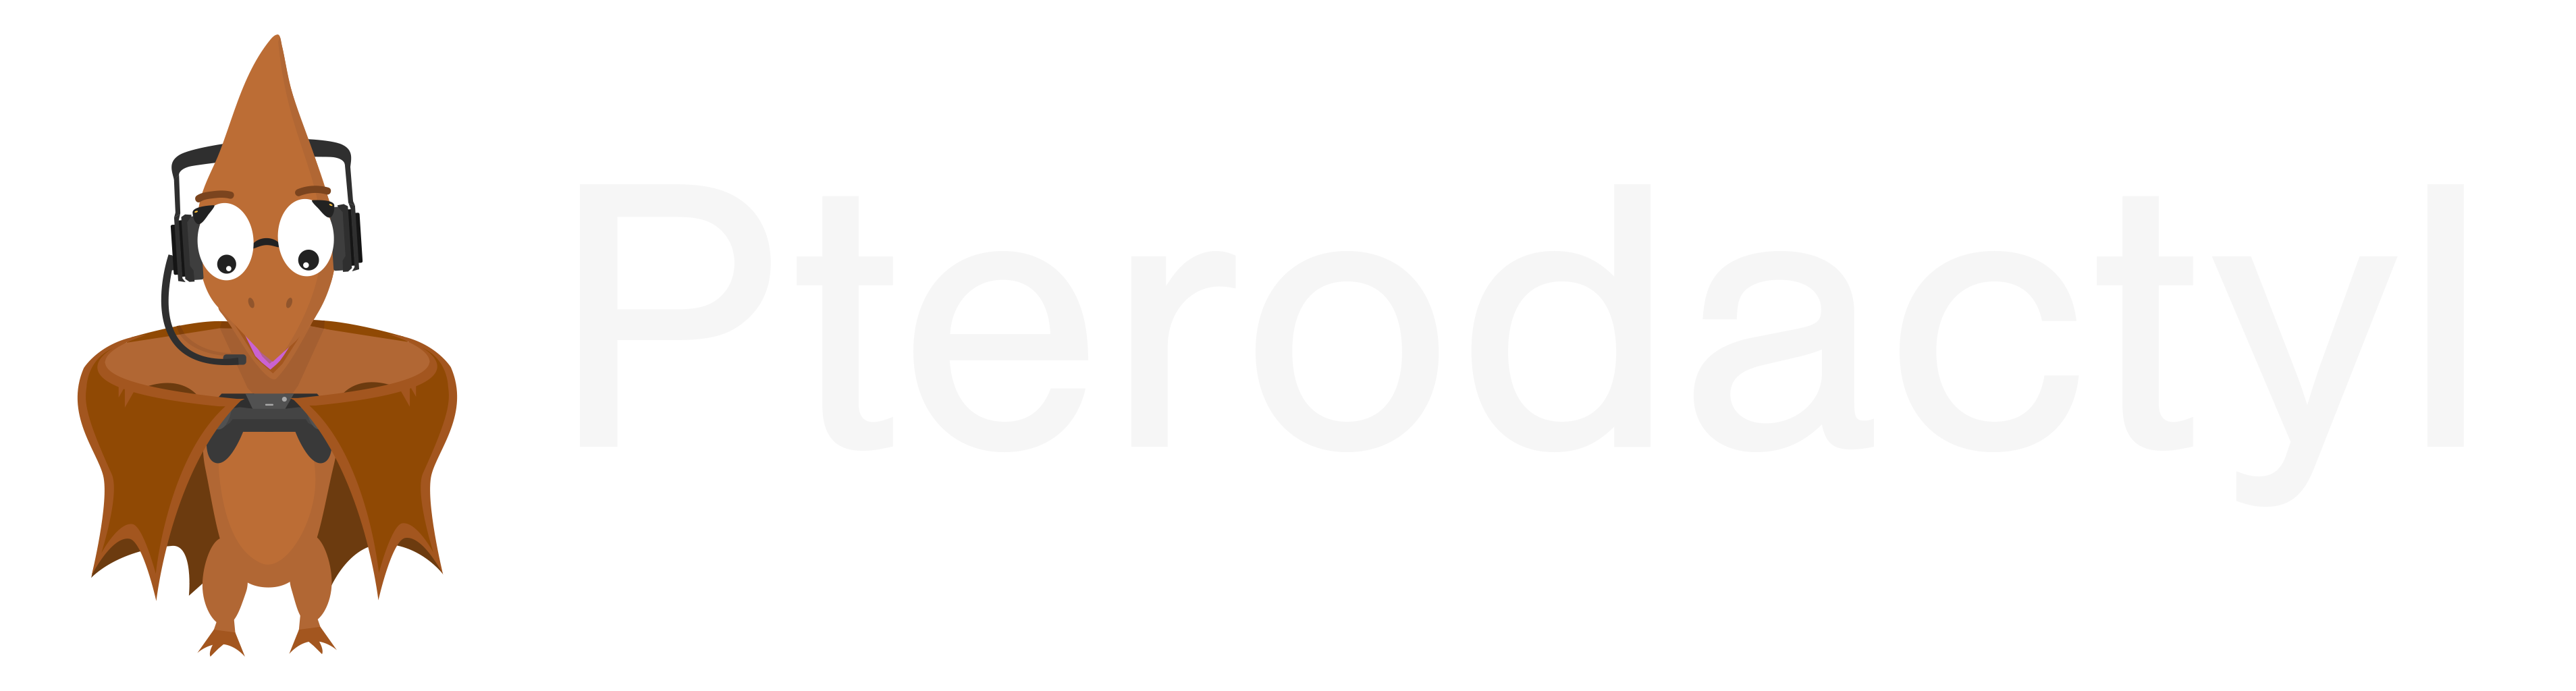 pterodactyl_logo_transparent.png